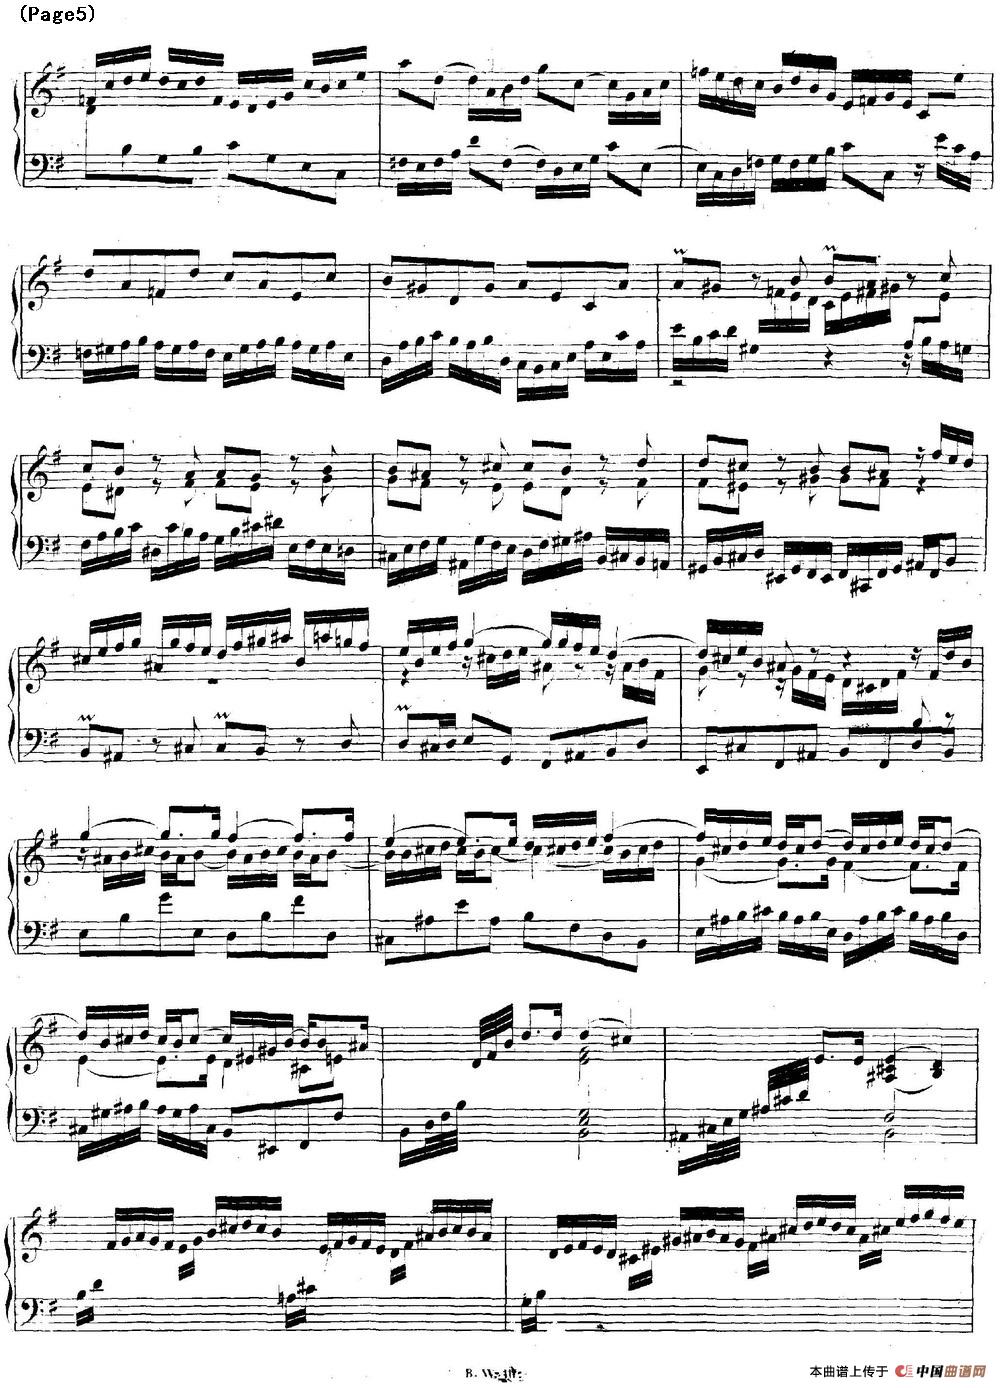 帕蒂塔6首德国组曲（No.6 e小调 巴赫 Partita e Minor BWV 830）(1)_BWV0830_页面_05.jpg